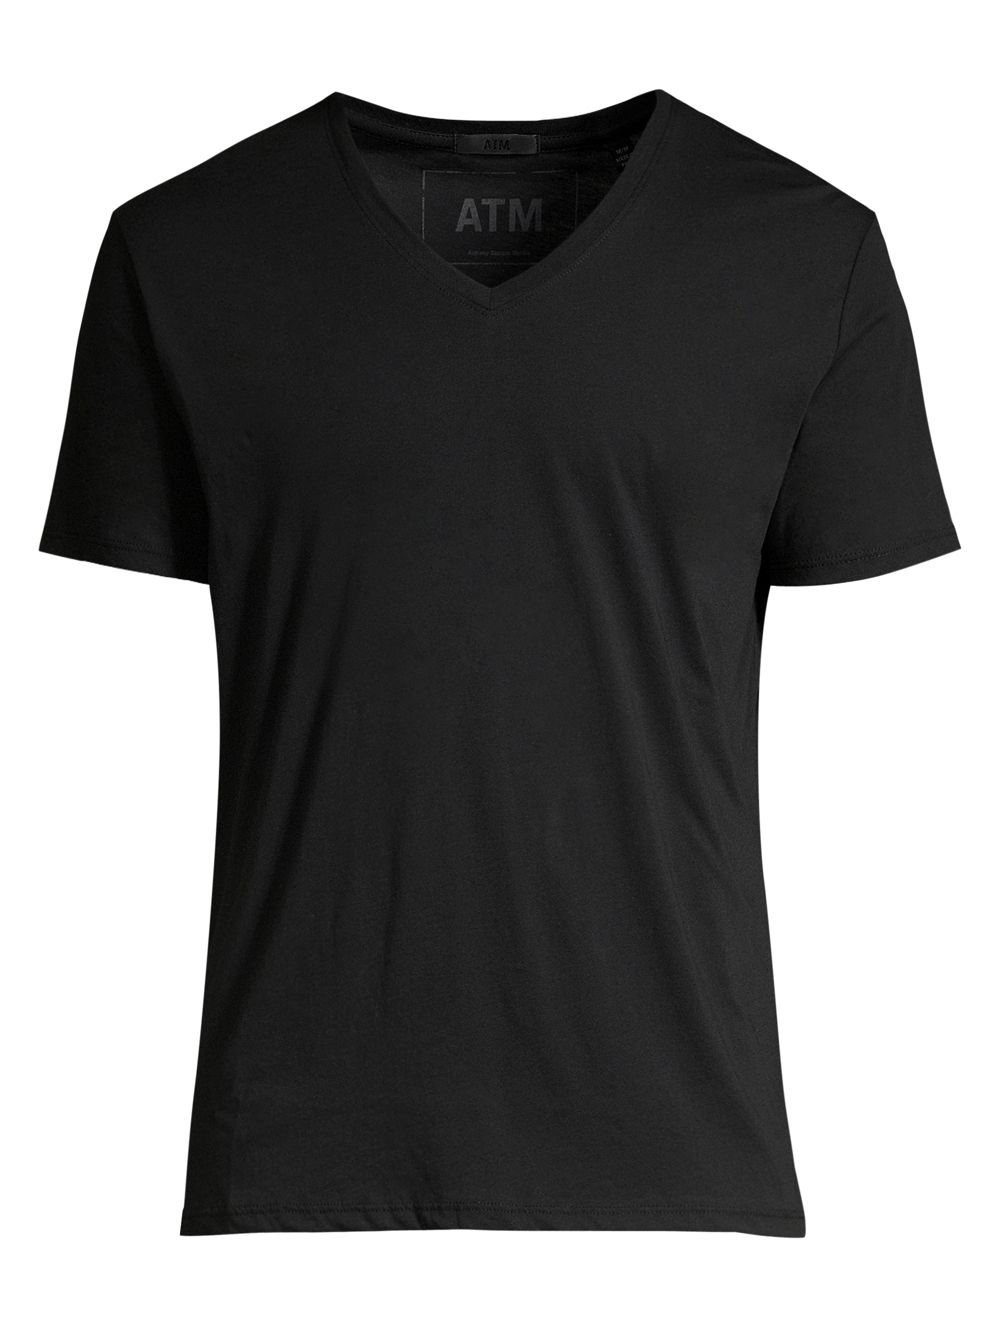 Хлопковая футболка Slim Fit с v-образным вырезом ATM Anthony Thomas Melillo, черный футболка с коротким рукавом и v образным вырезом atm anthony thomas melillo